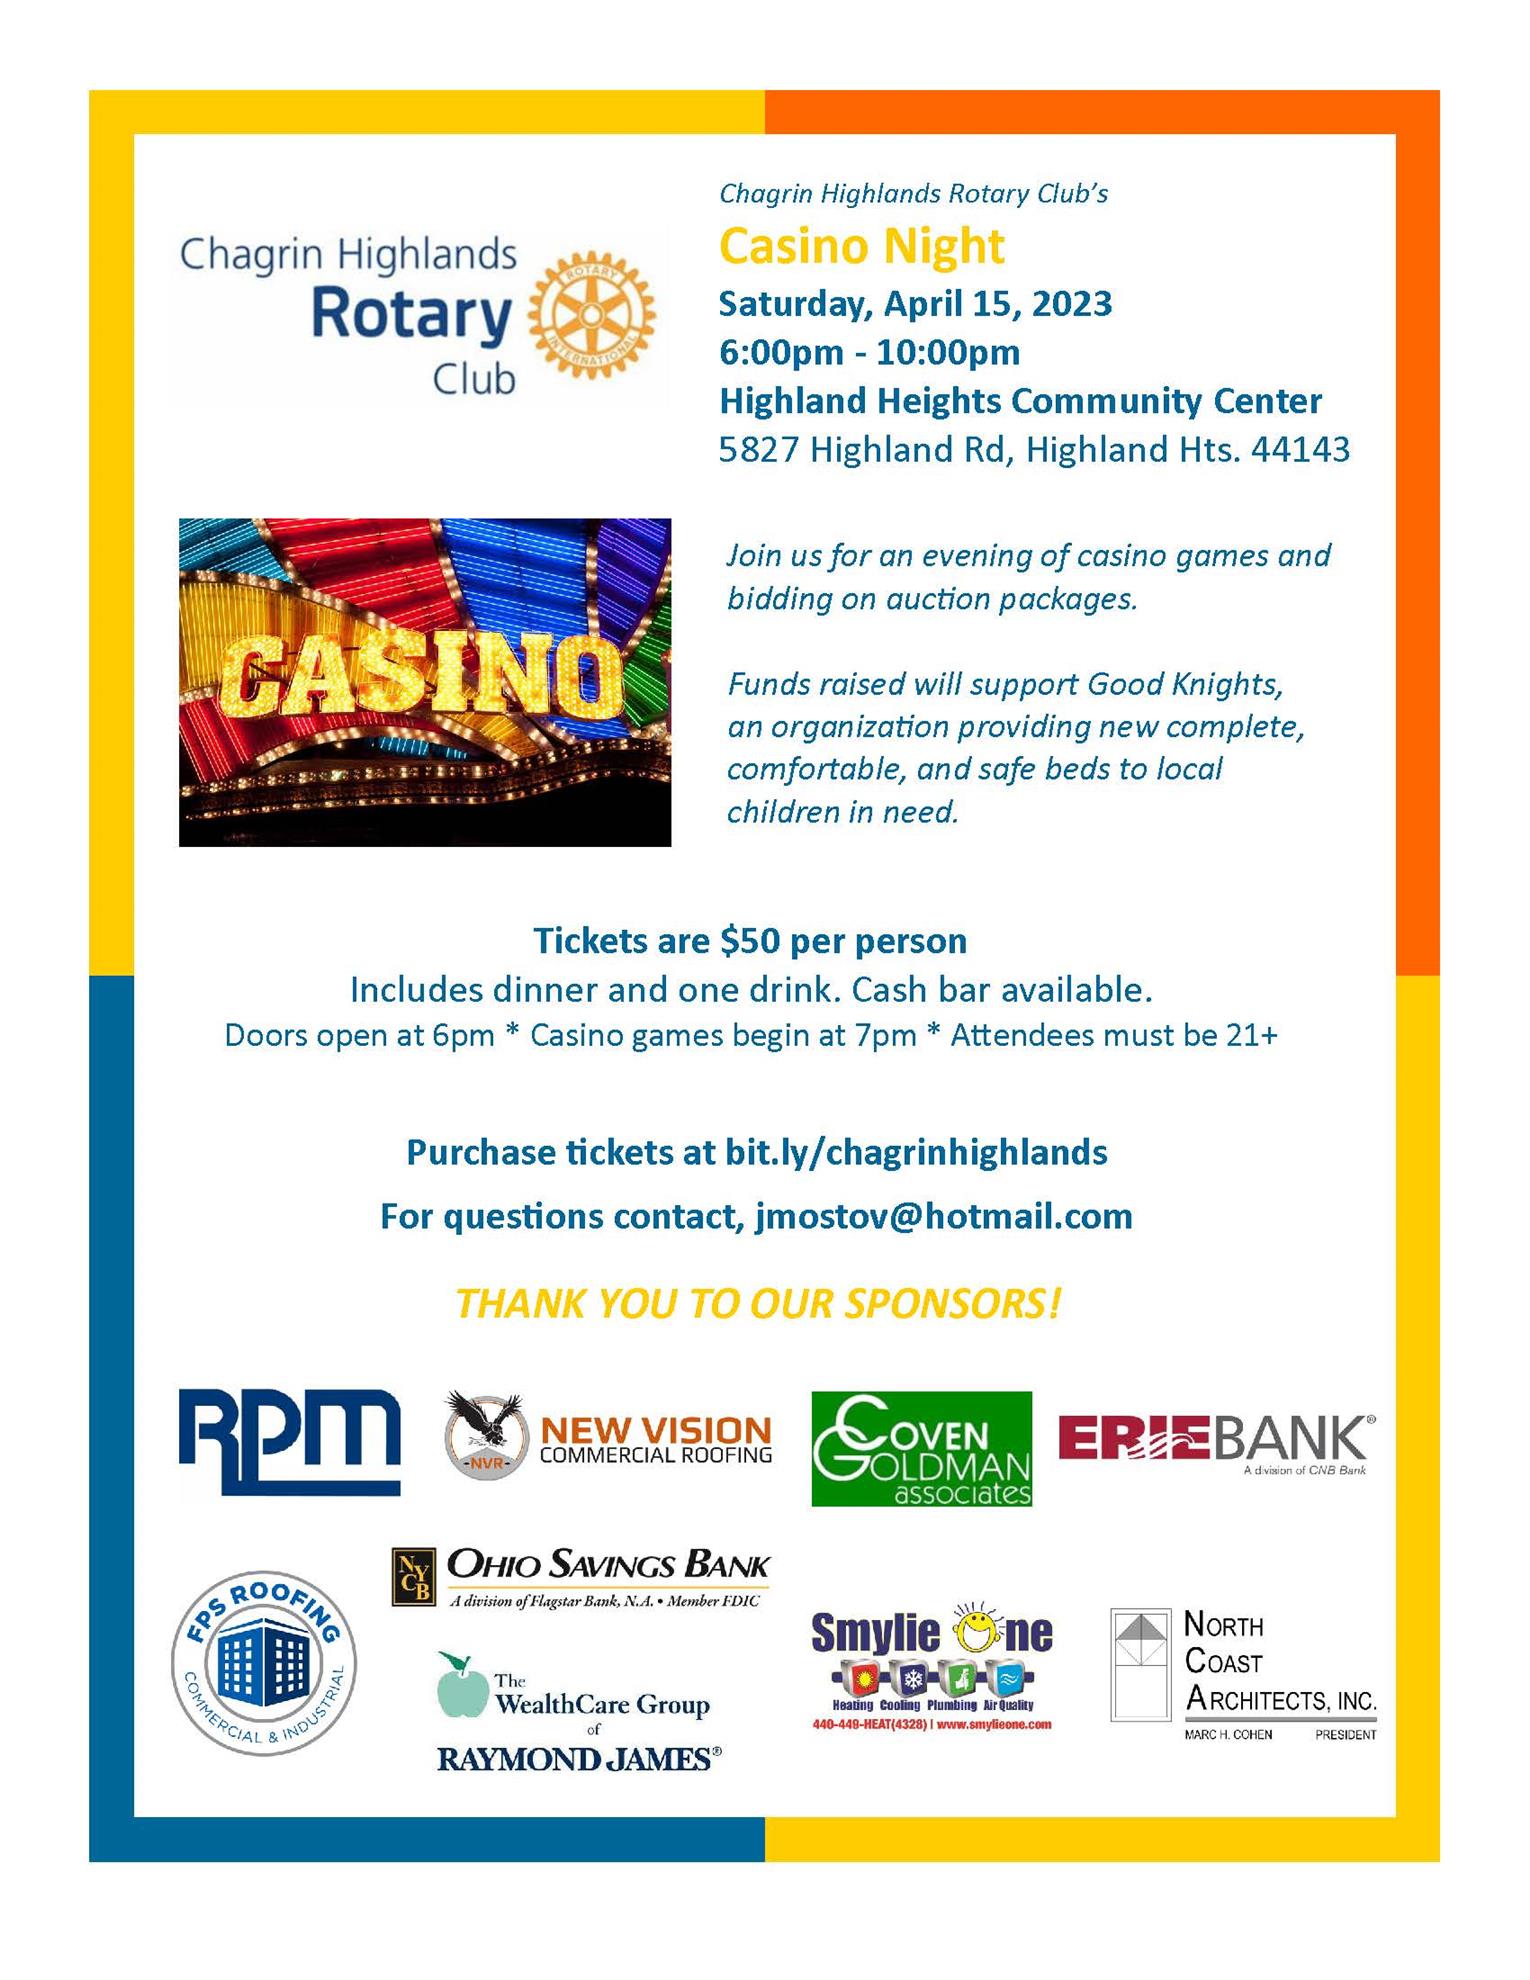 Casino Night Fundraiser Flyer April 15, 2023